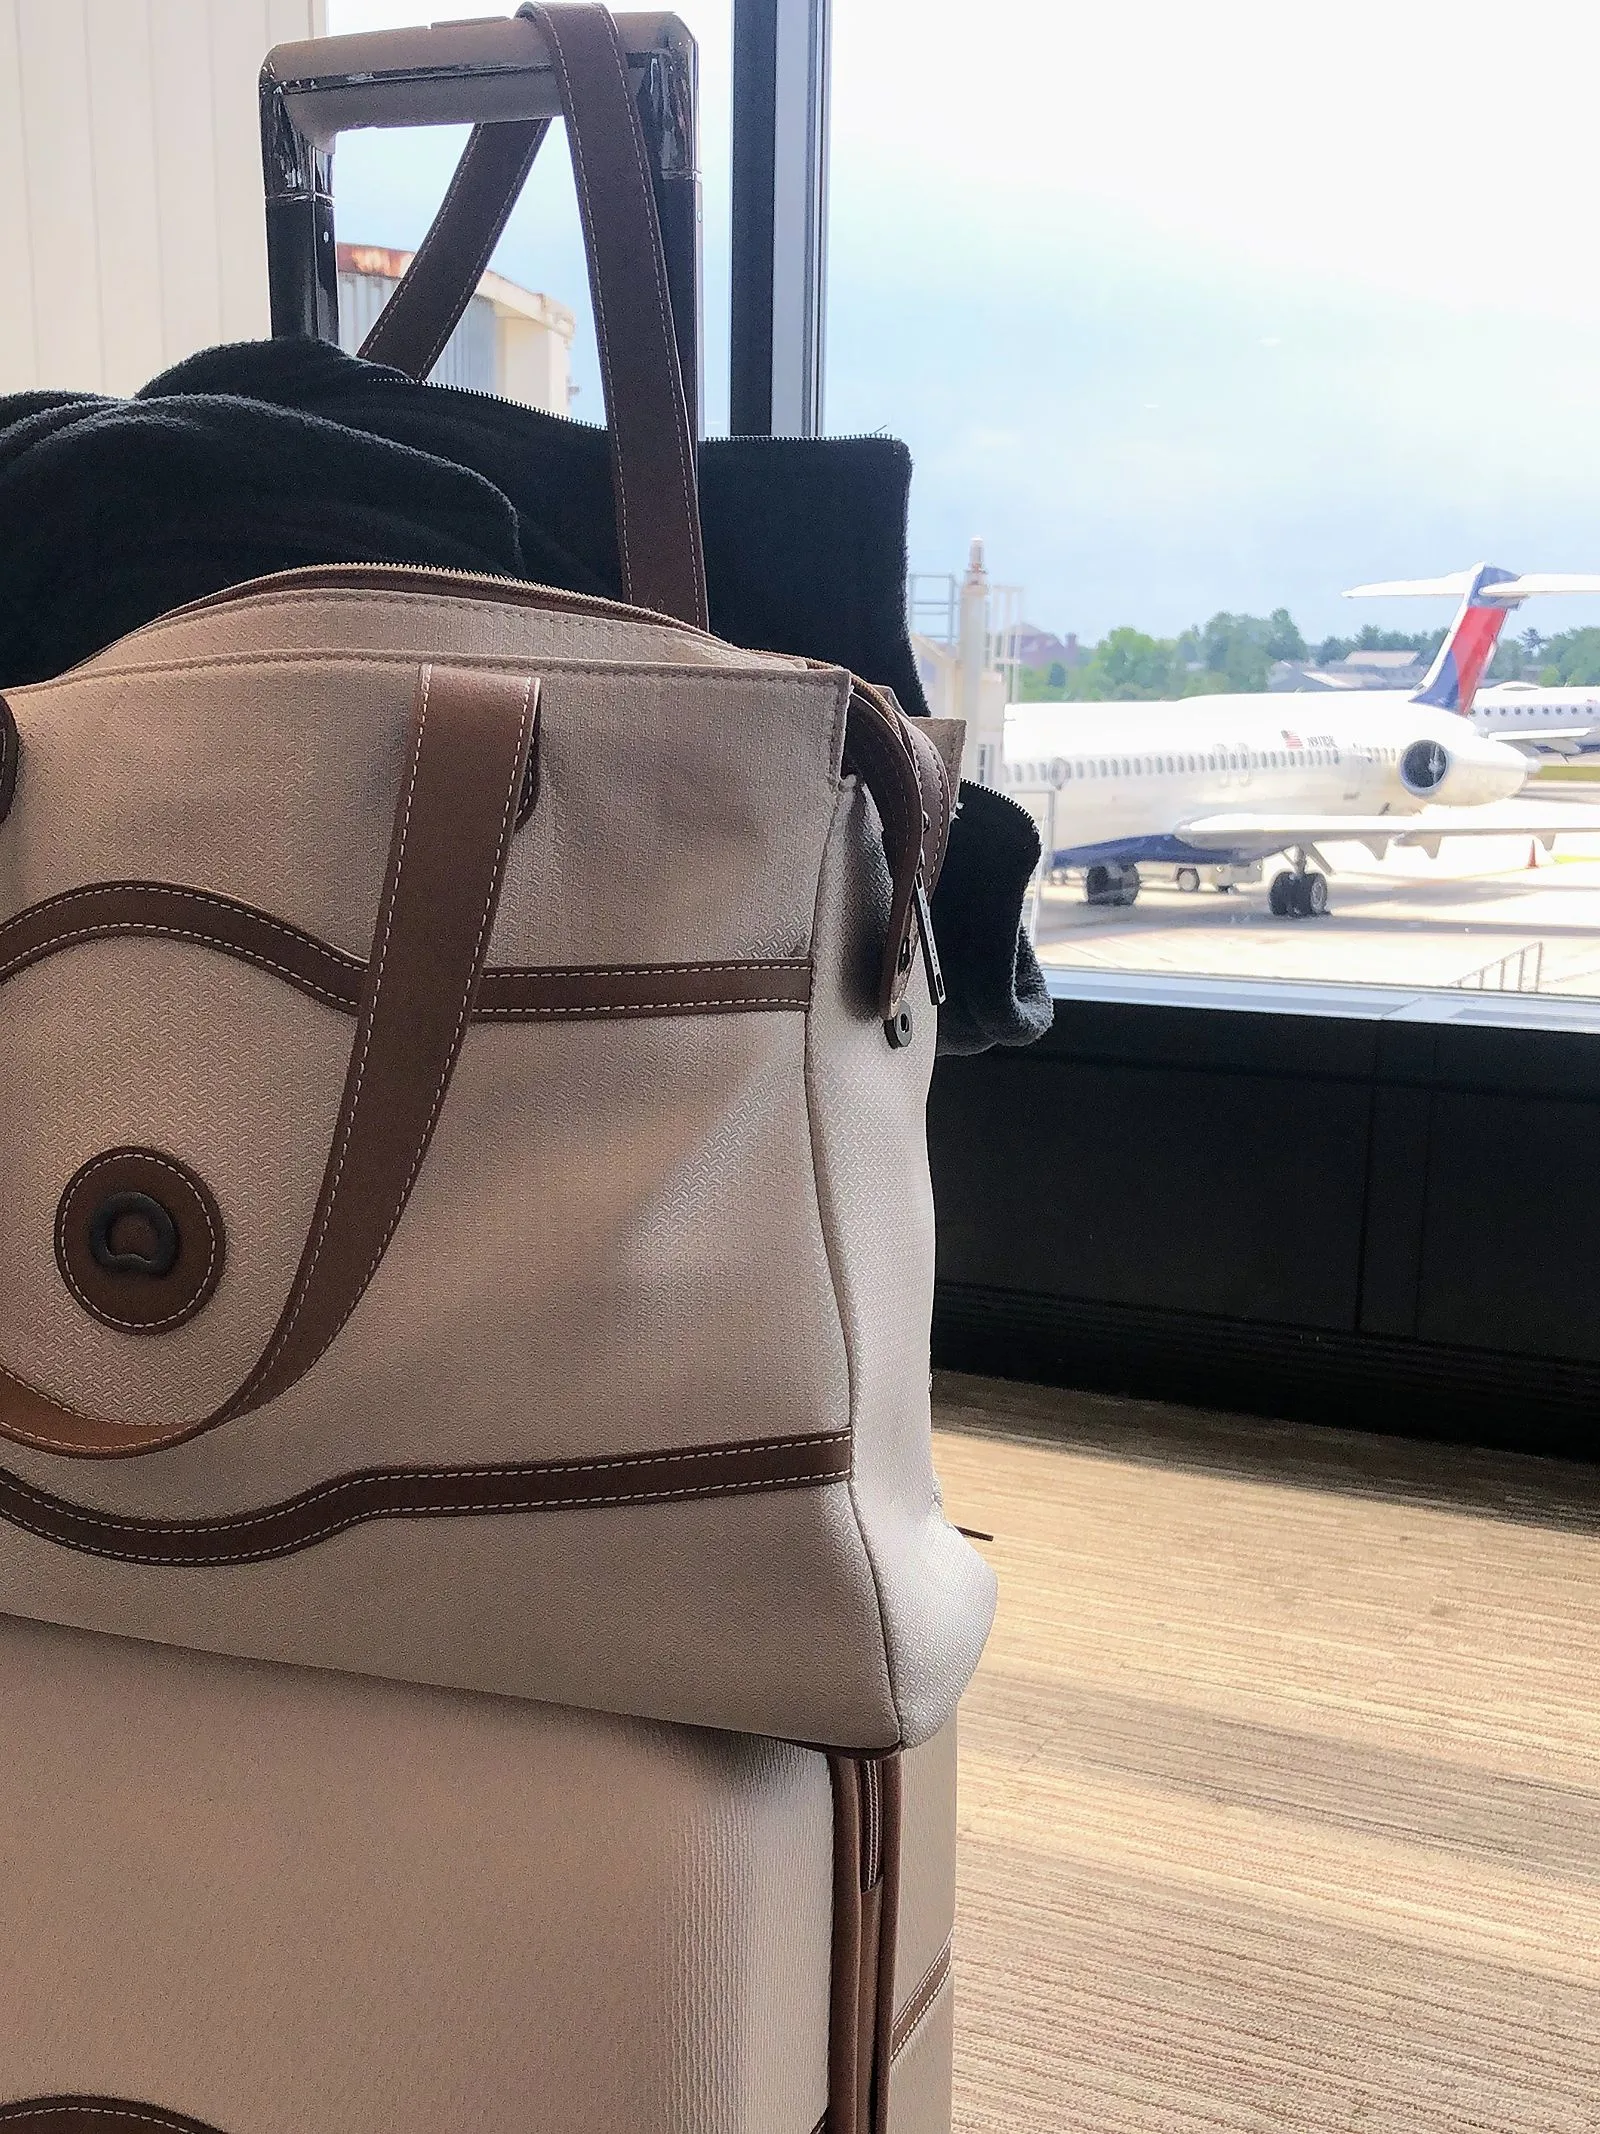 bags at airport